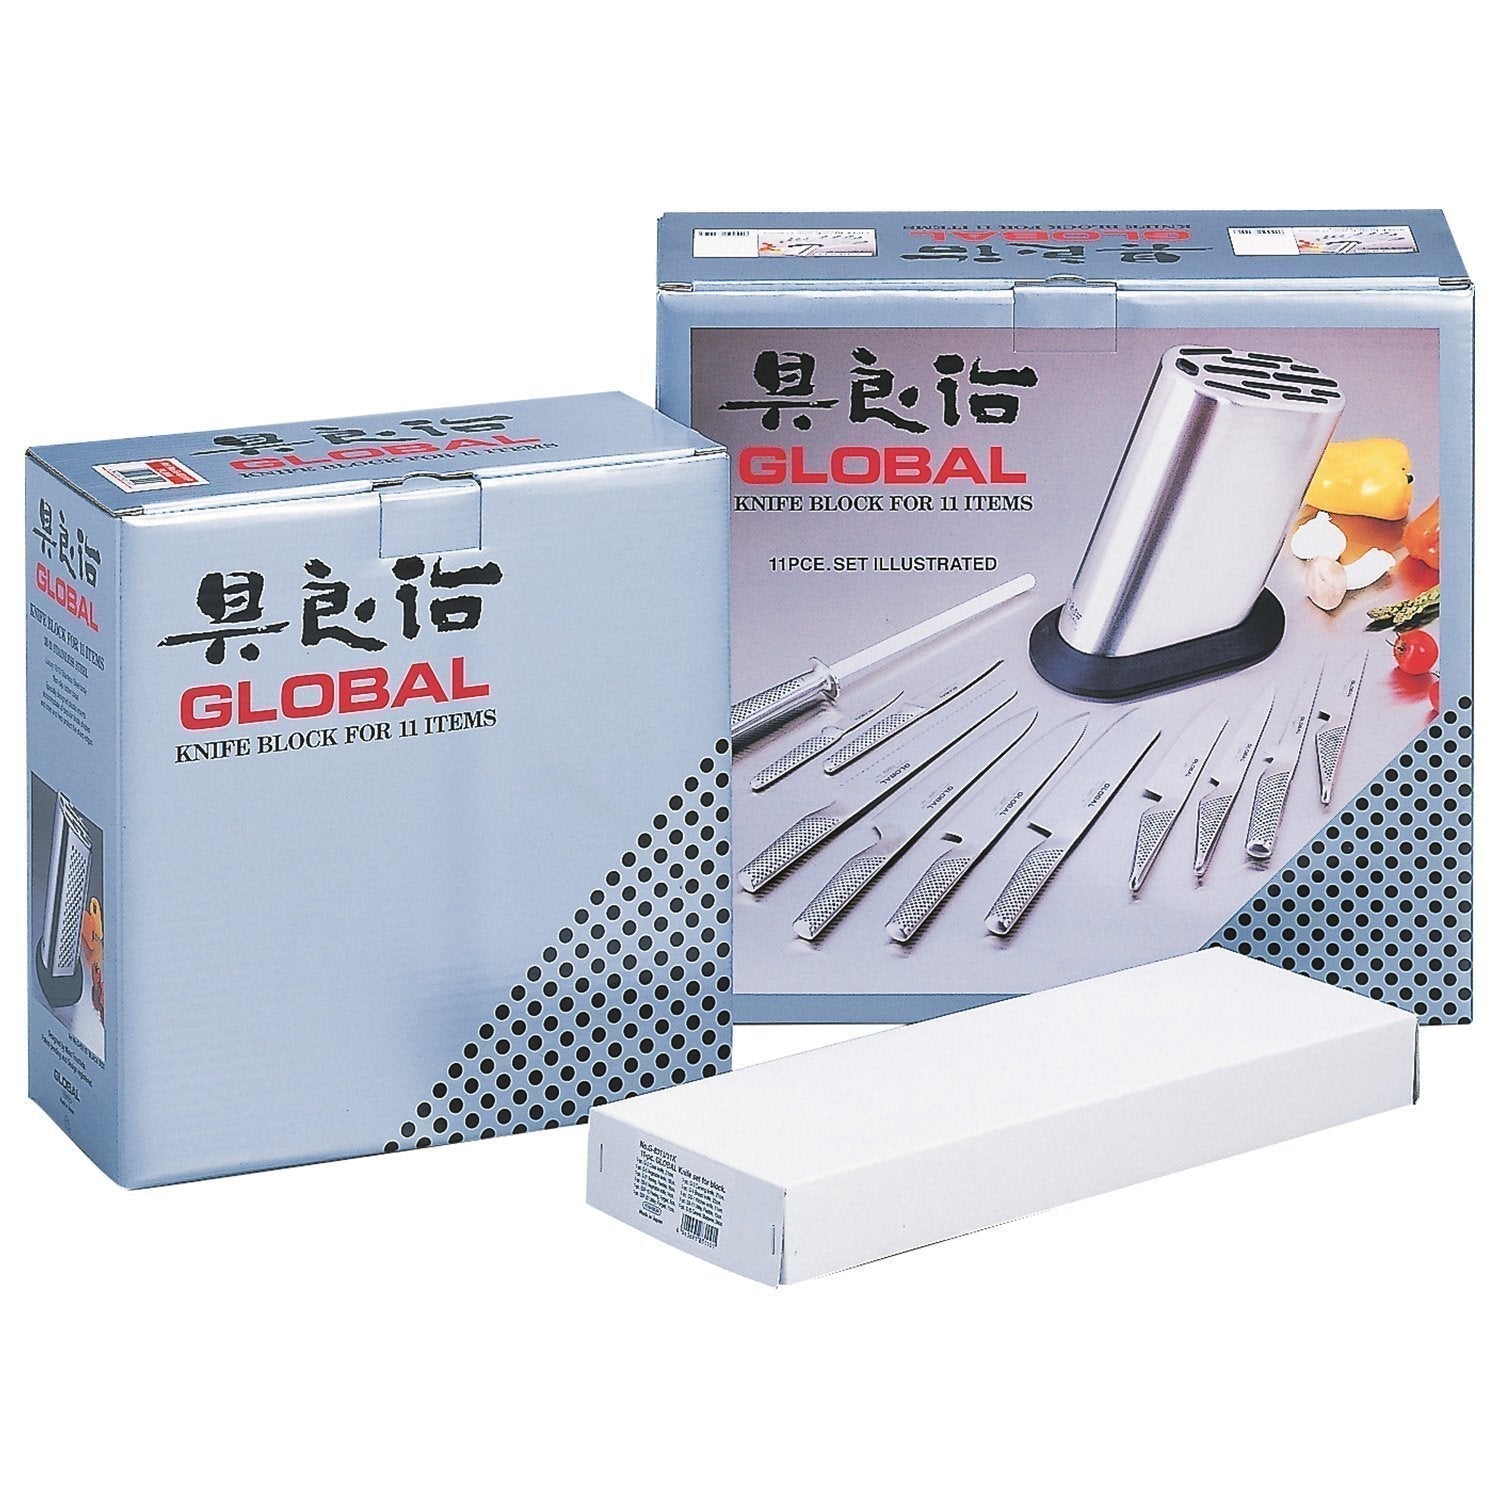 Global G 8311 KB/PLR 11 Piece Knife Block Set uten poeng